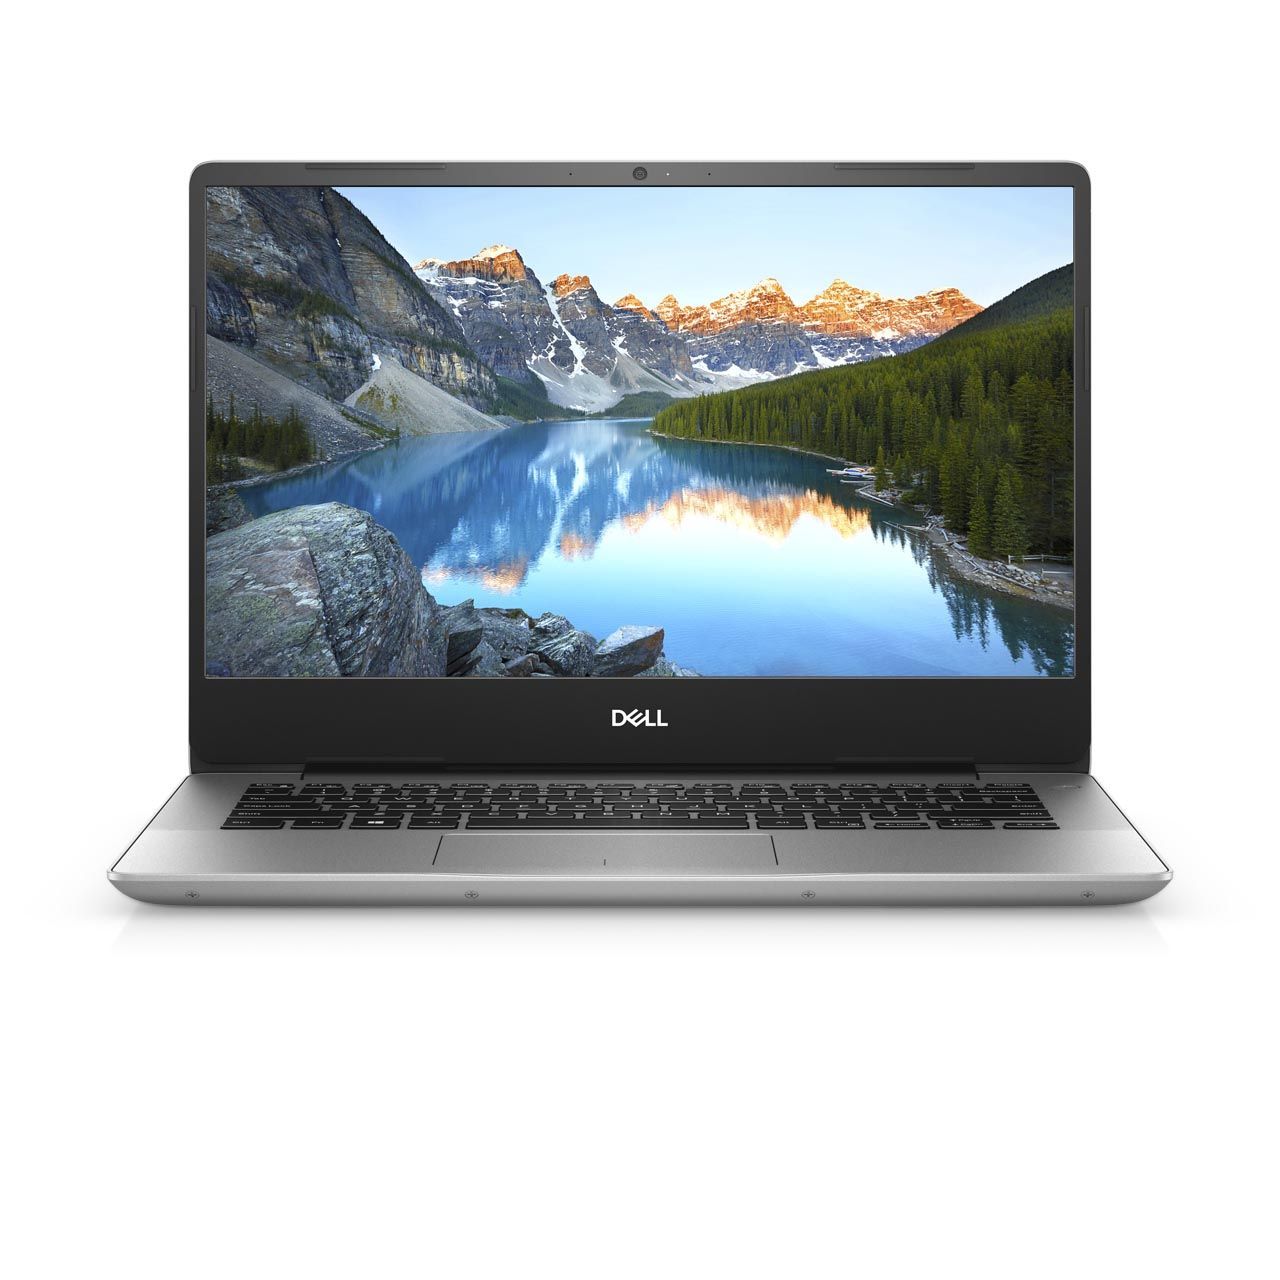 DELL Inspiron 5480-INS-1266 Laptop i5-8265U 1.6Ghz/8GB/256GB/NVIDIA GeForce MX 250 2GB/14 FHD/Windows 10/Silver